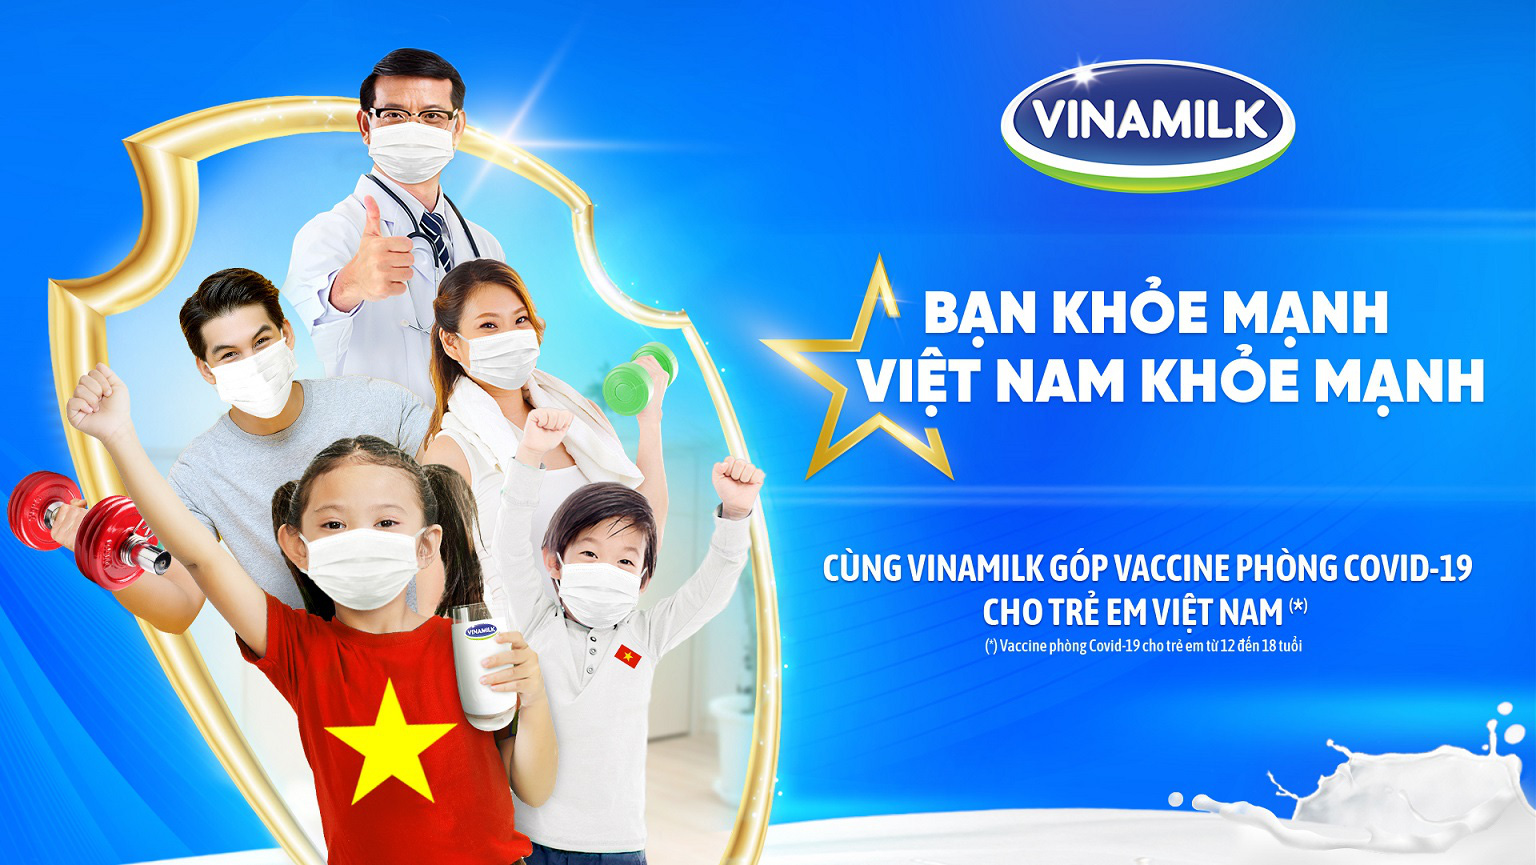 Vinamilk khởi động chiến dịch “Bạn khỏe mạnh, Việt Nam khỏe mạnh” nhân dịp 45 năm thành lập với nhiều hoạt động ý nghĩa - Ảnh 1.